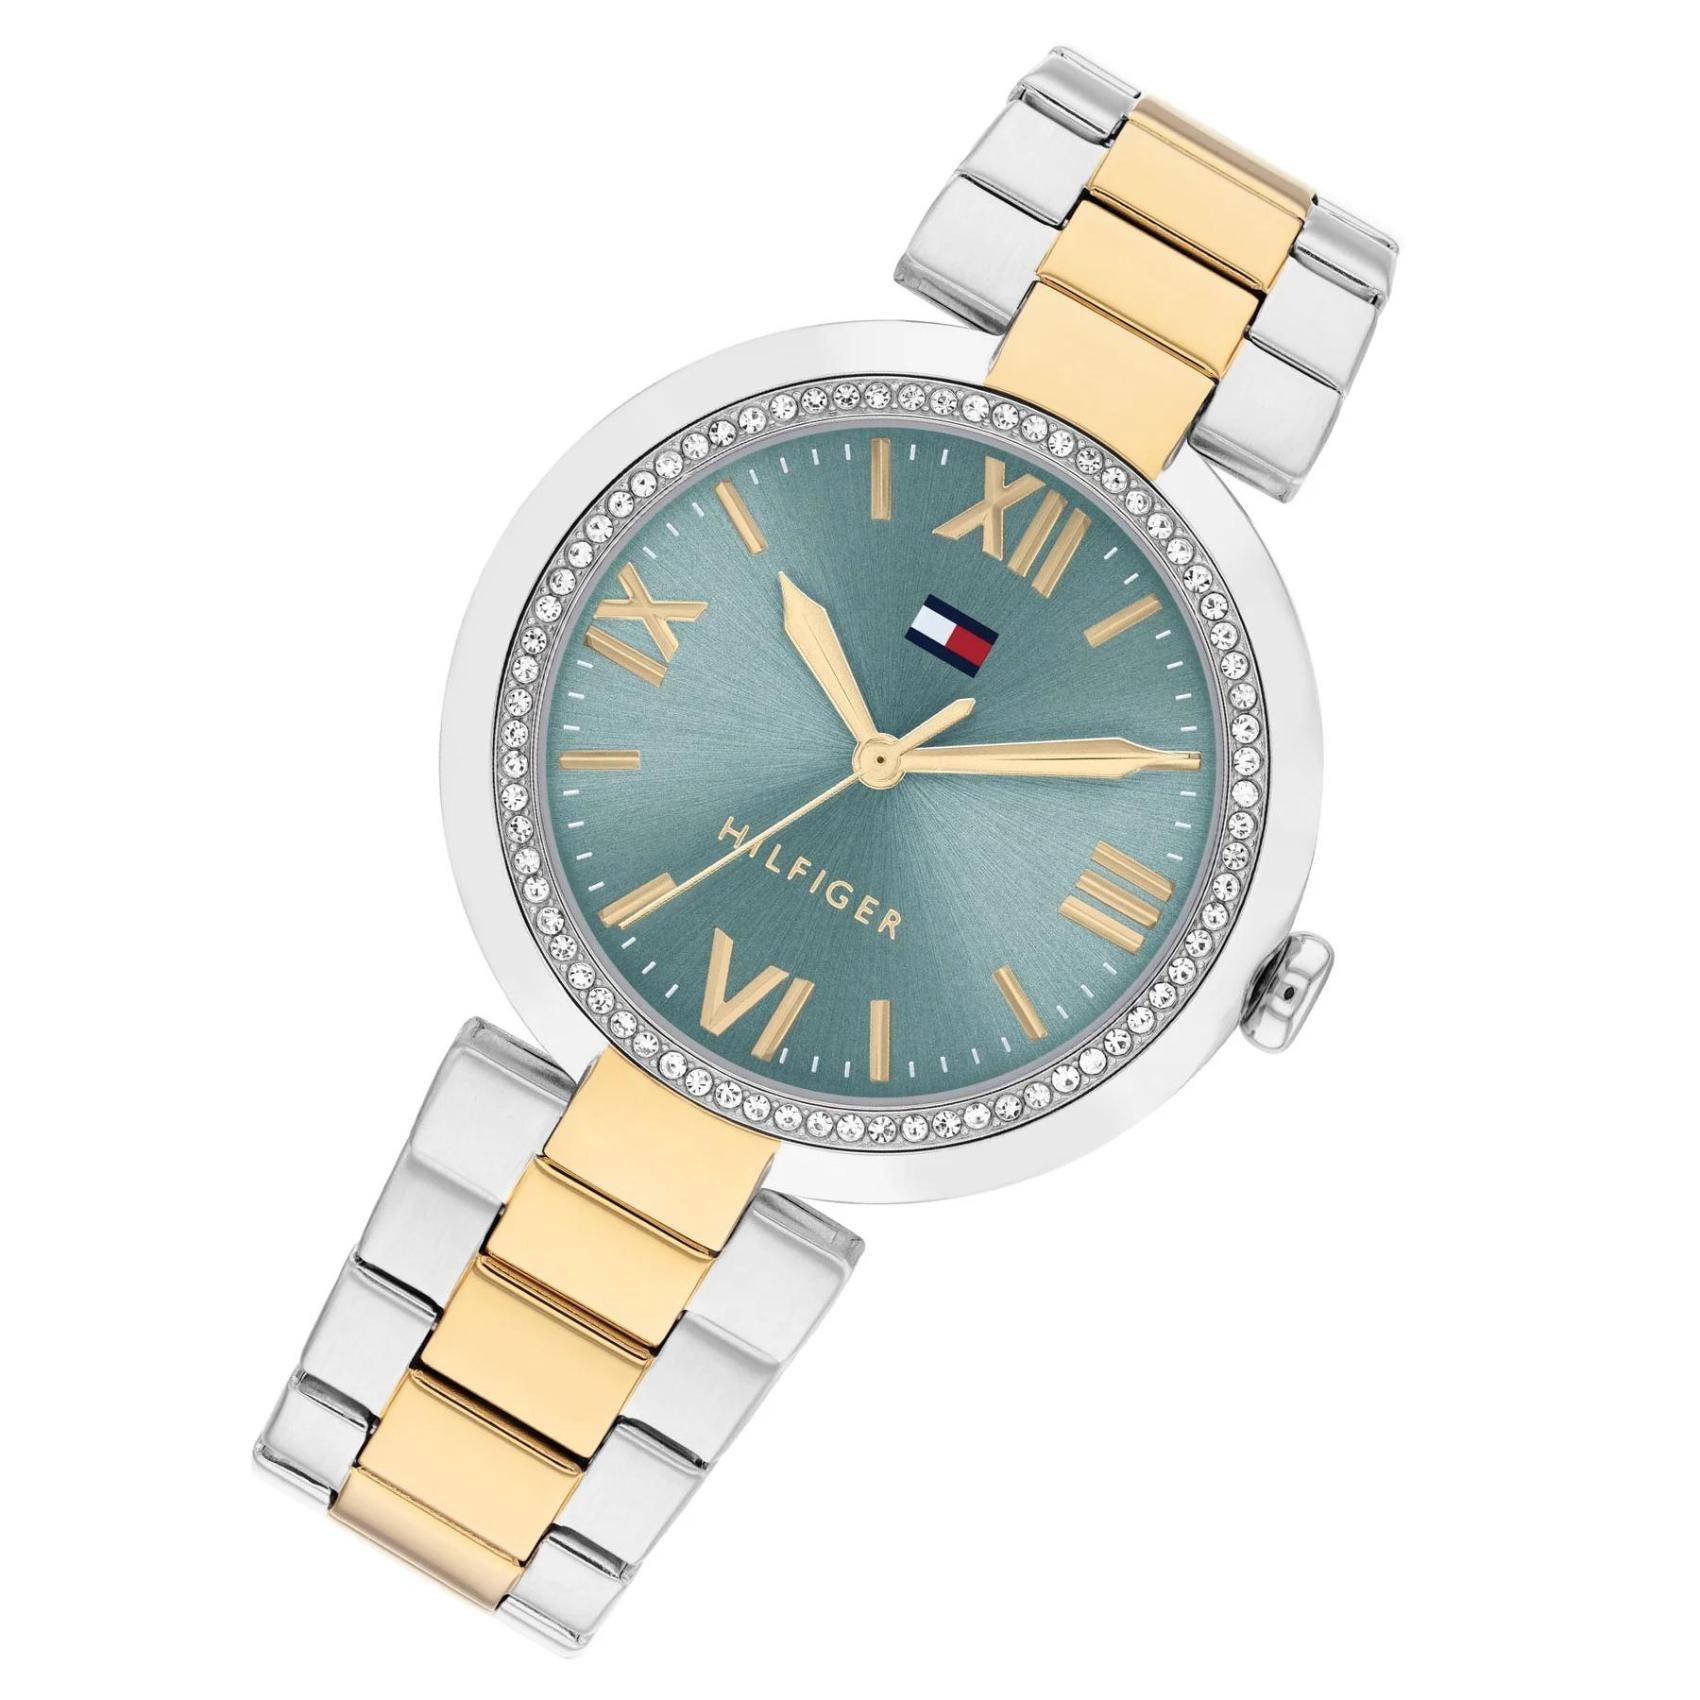 Γυναικείο ρολόι Tommy Hilfiger Alice 1782680 με δίχρωμο ασημί-χρυσό ατσάλινο μπρασελέ και μπλε καντράν διαμέτρου 38mm με ζιργκόν.